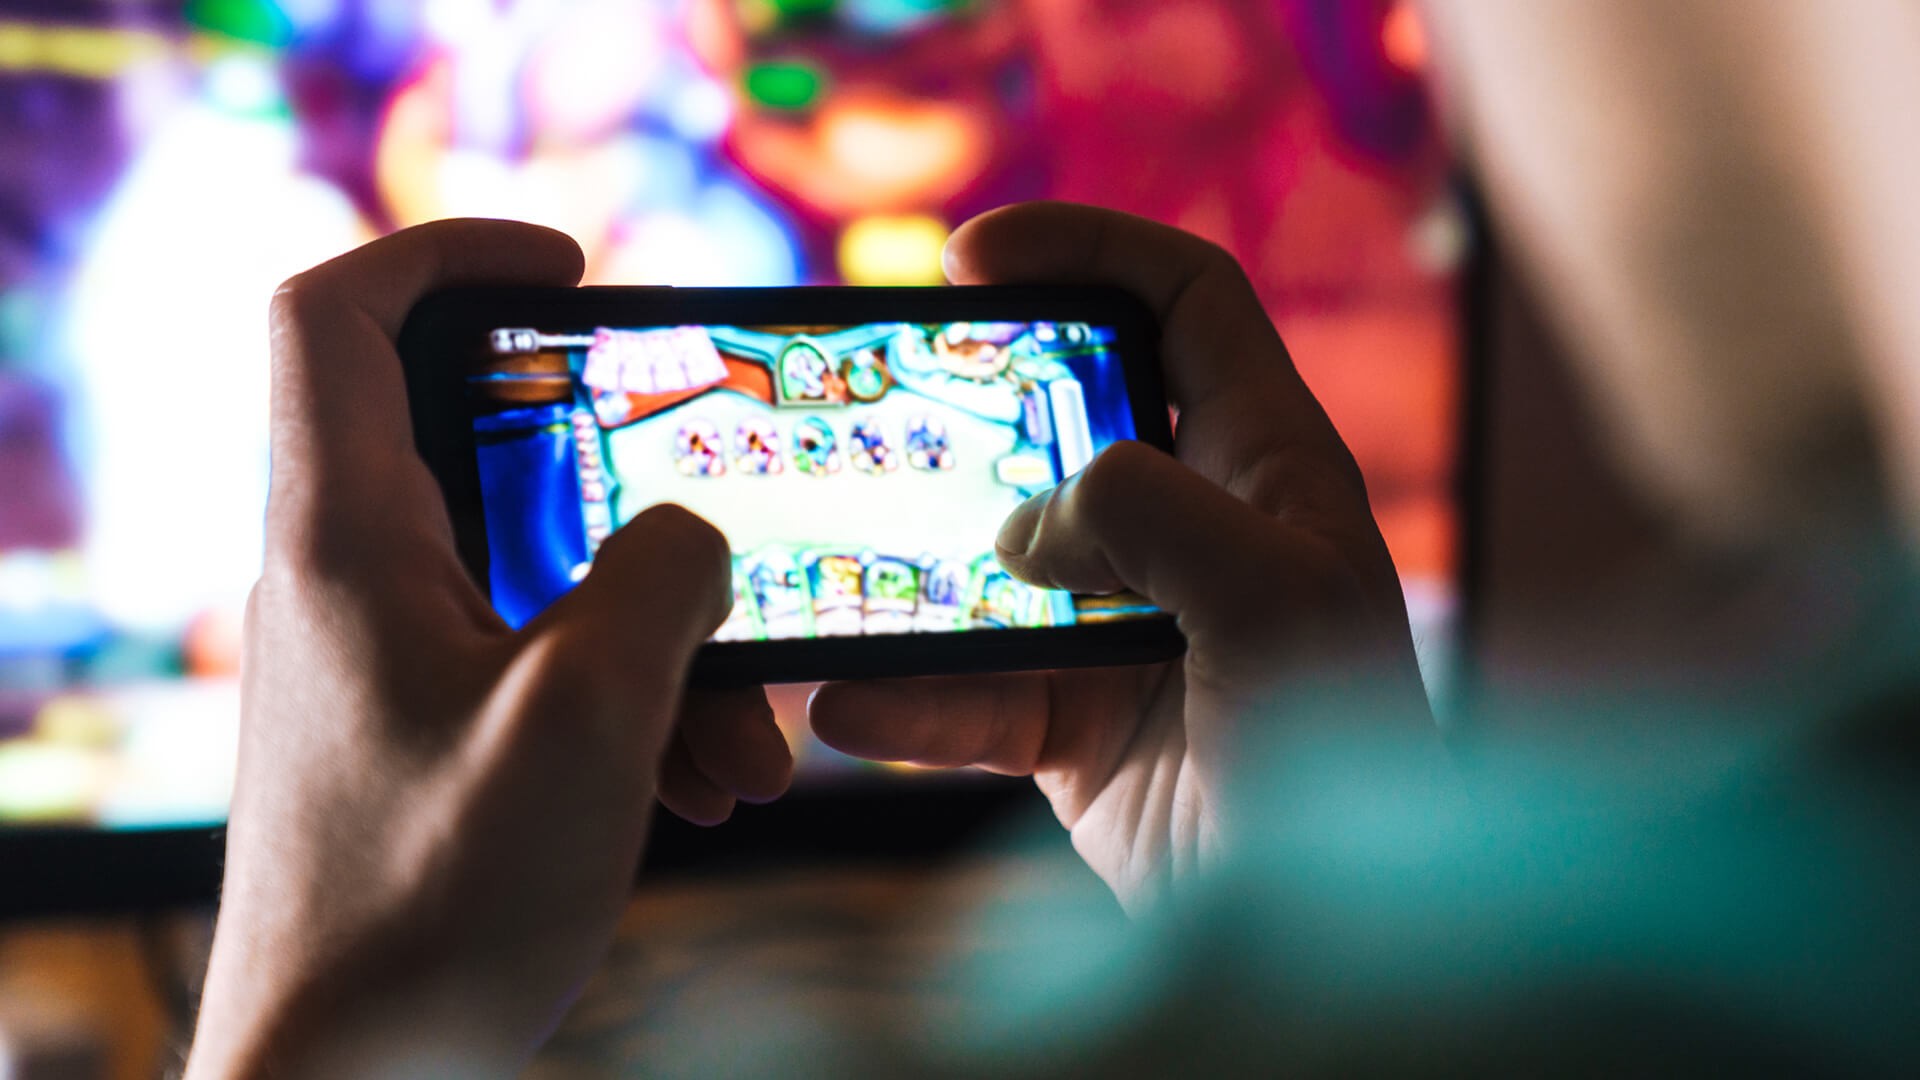 Cerca de 75% dos brasileiros se reconhecem gamers; smartphone predomina -  Forbes